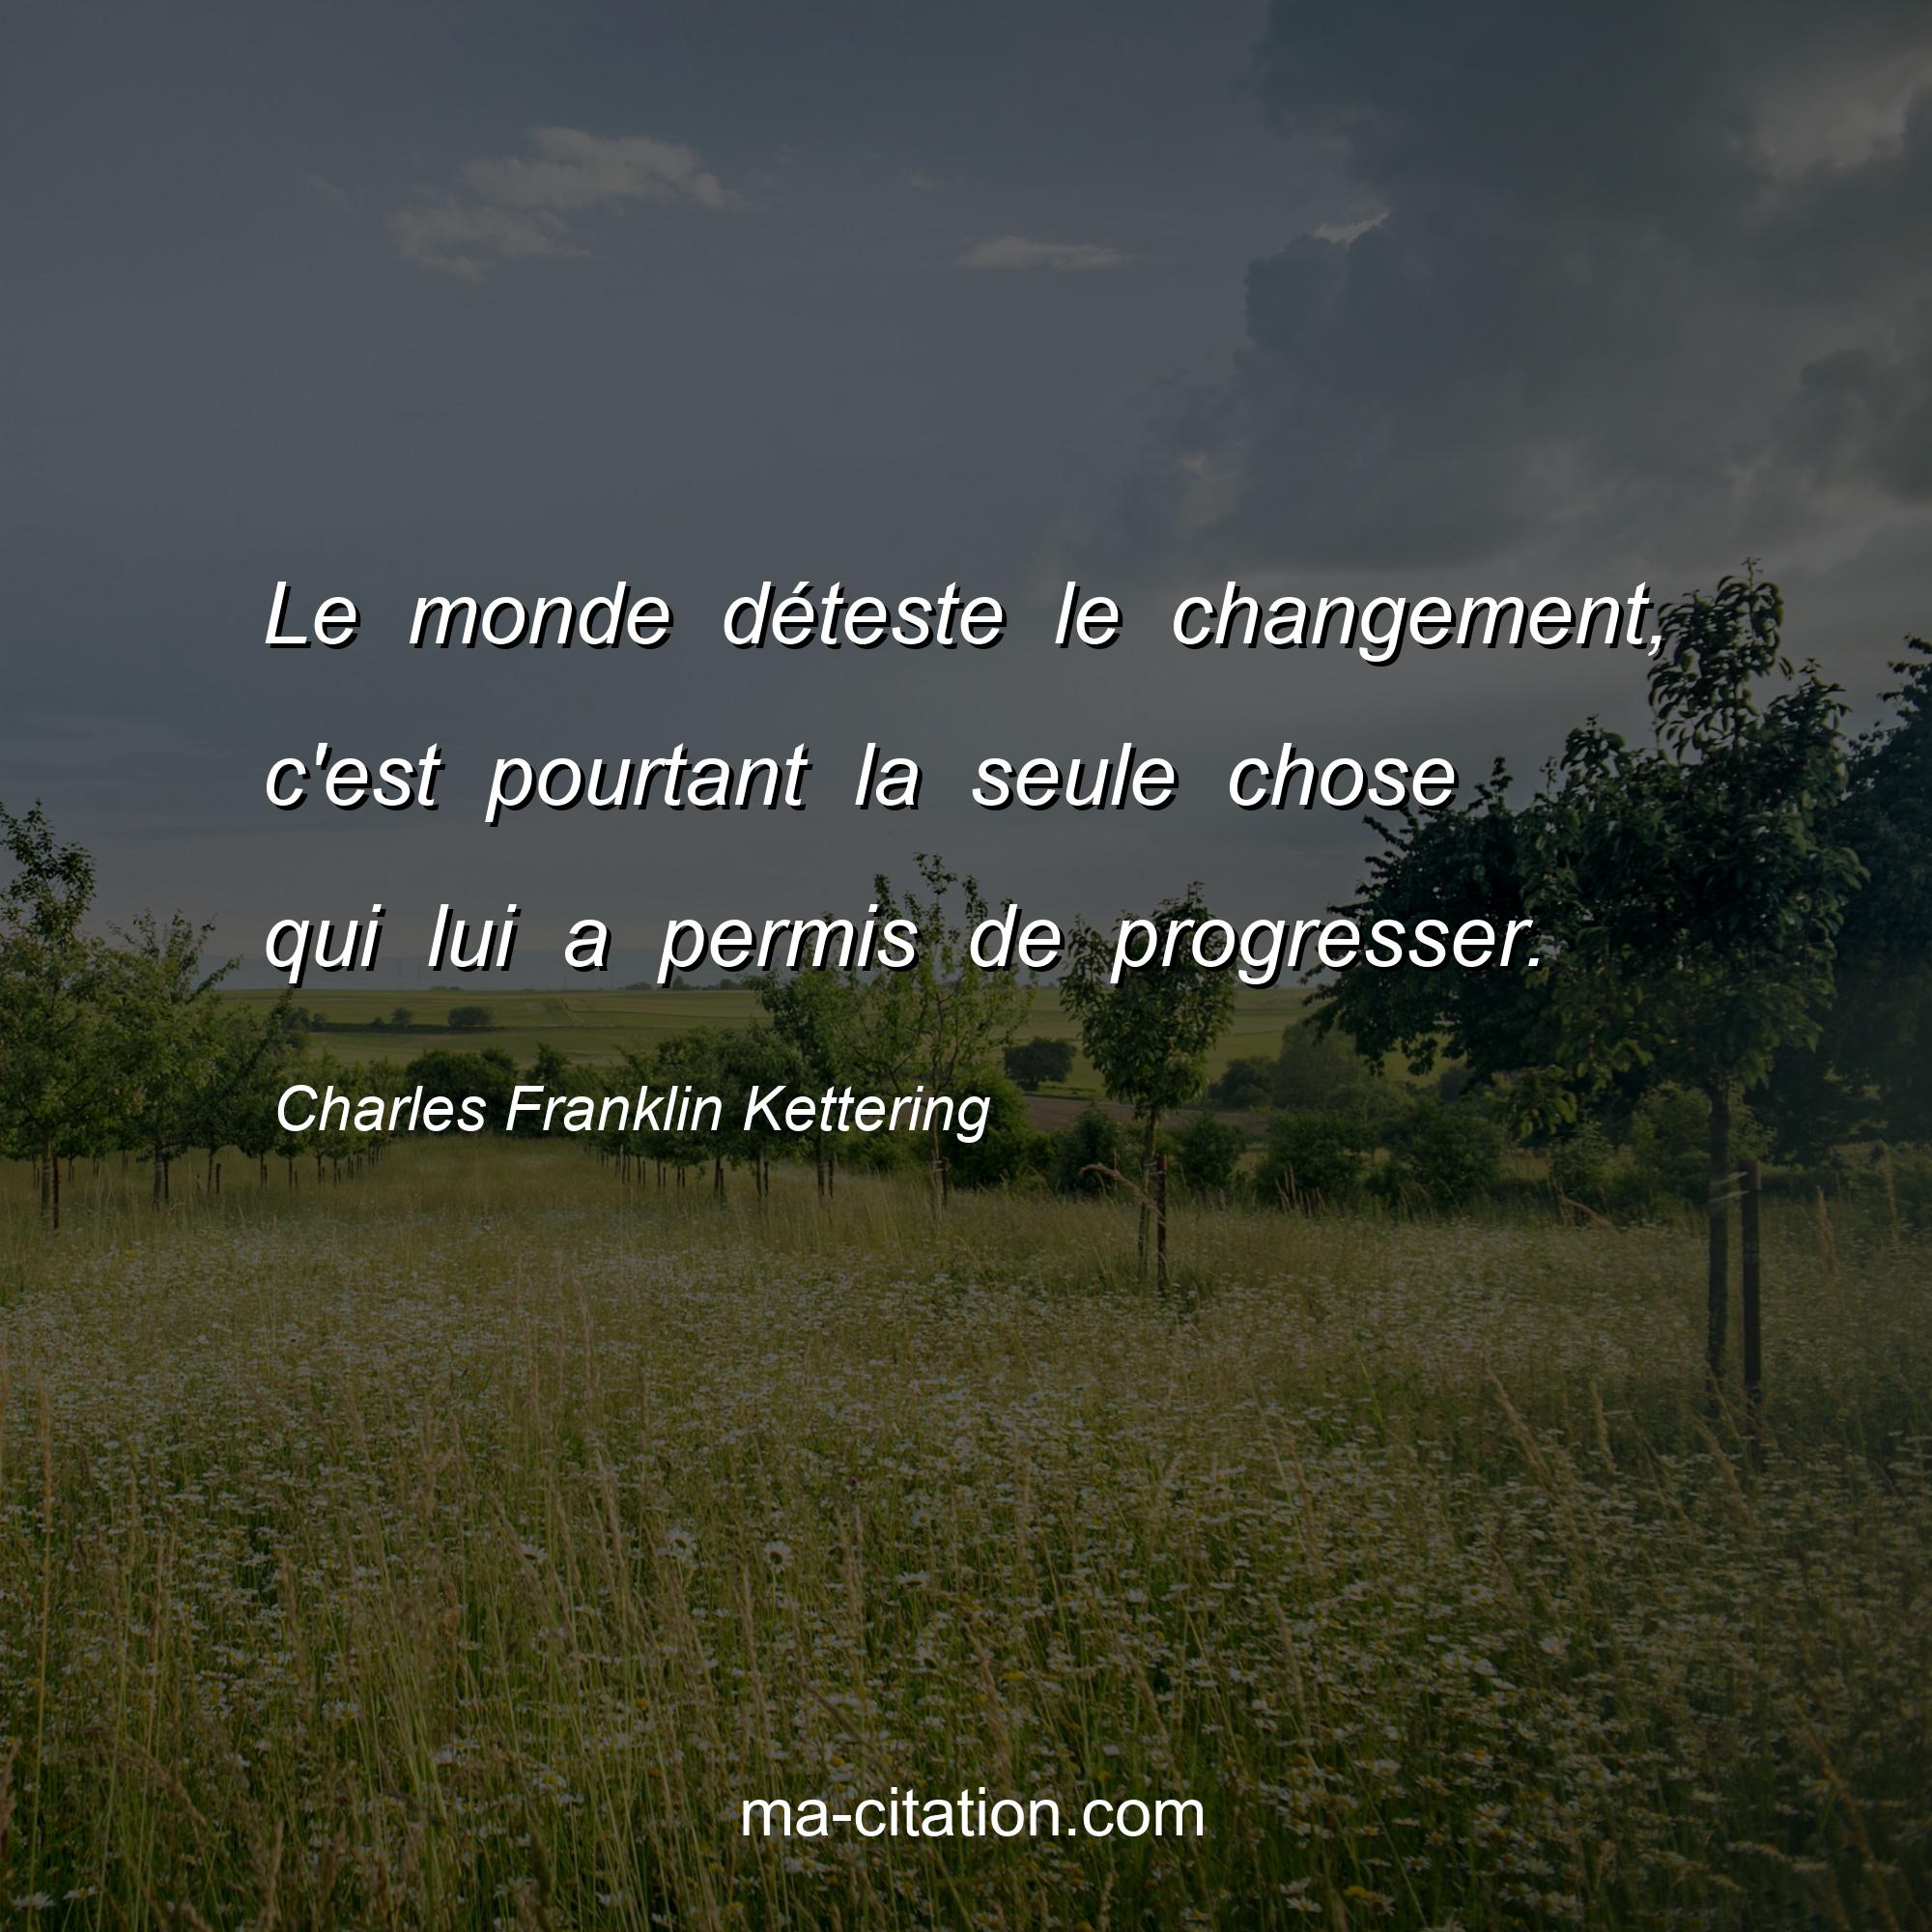 Charles Franklin Kettering : Le monde déteste le changement, c'est pourtant la seule chose qui lui a permis de progresser.